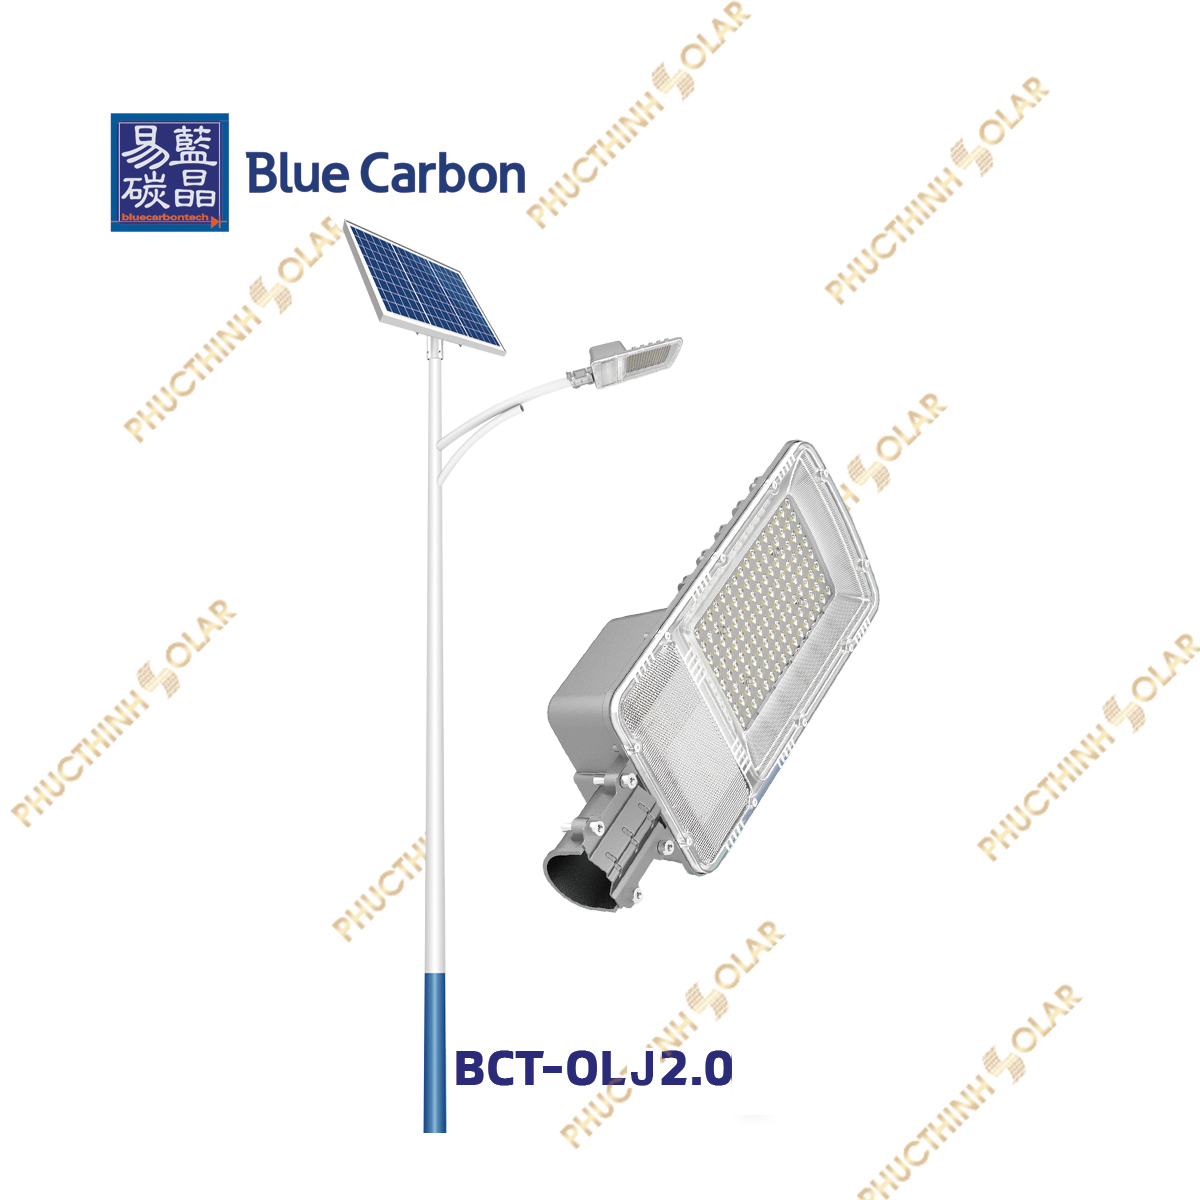 Blue Carbon – Đèn đường năng lượng mặt trời 30W BCT-OLJ2.0